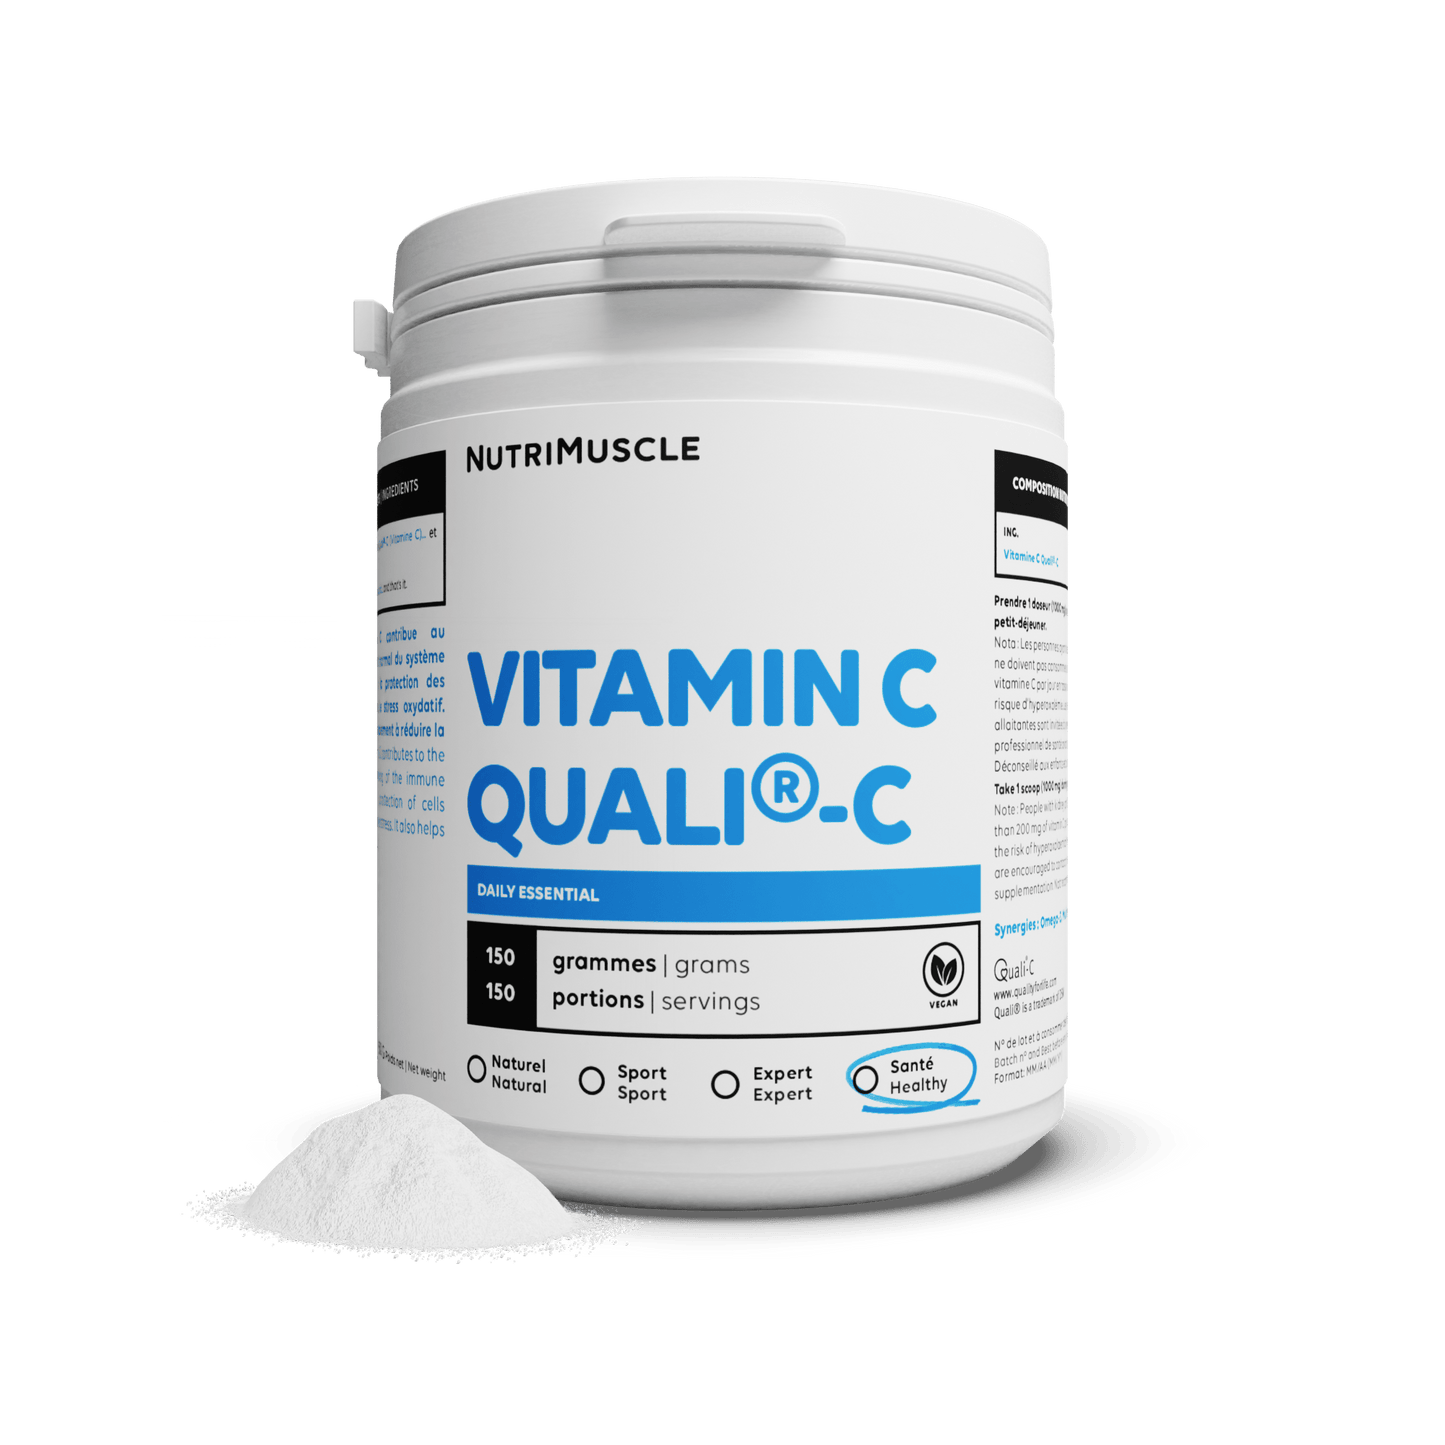 Nutrimuscle Vitamines 150 g Vitamine C Quali®C en poudre